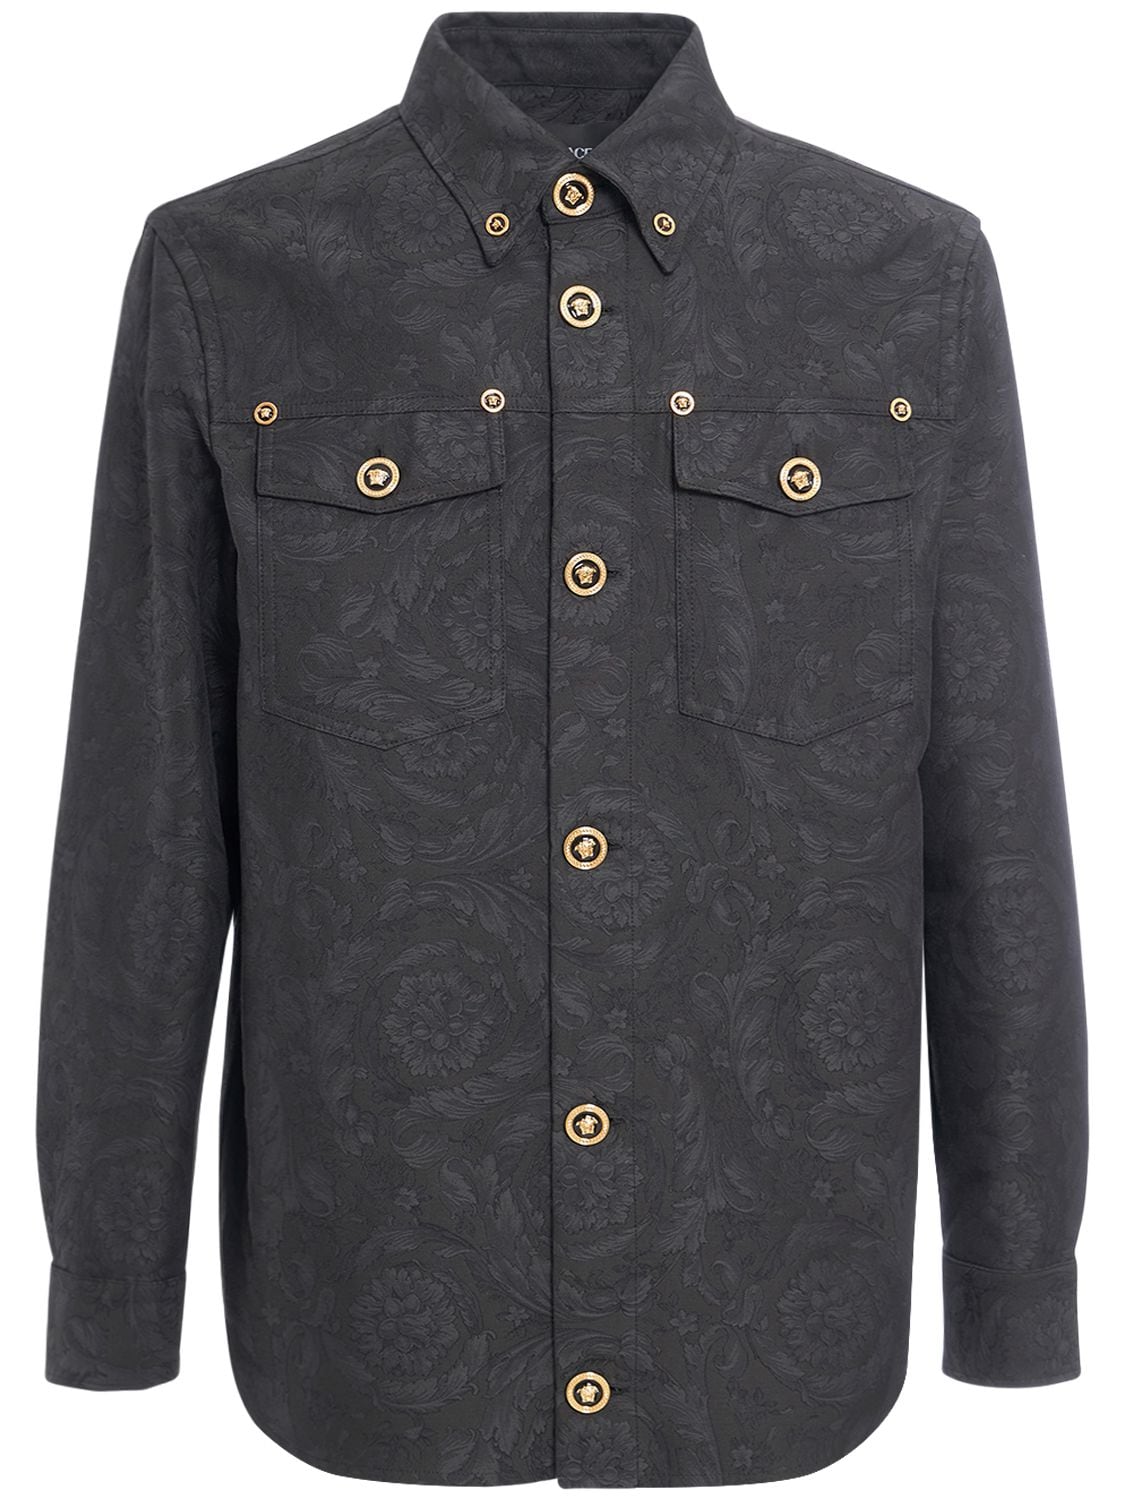 Image of Barocco Jacquard Cotton Overshirt